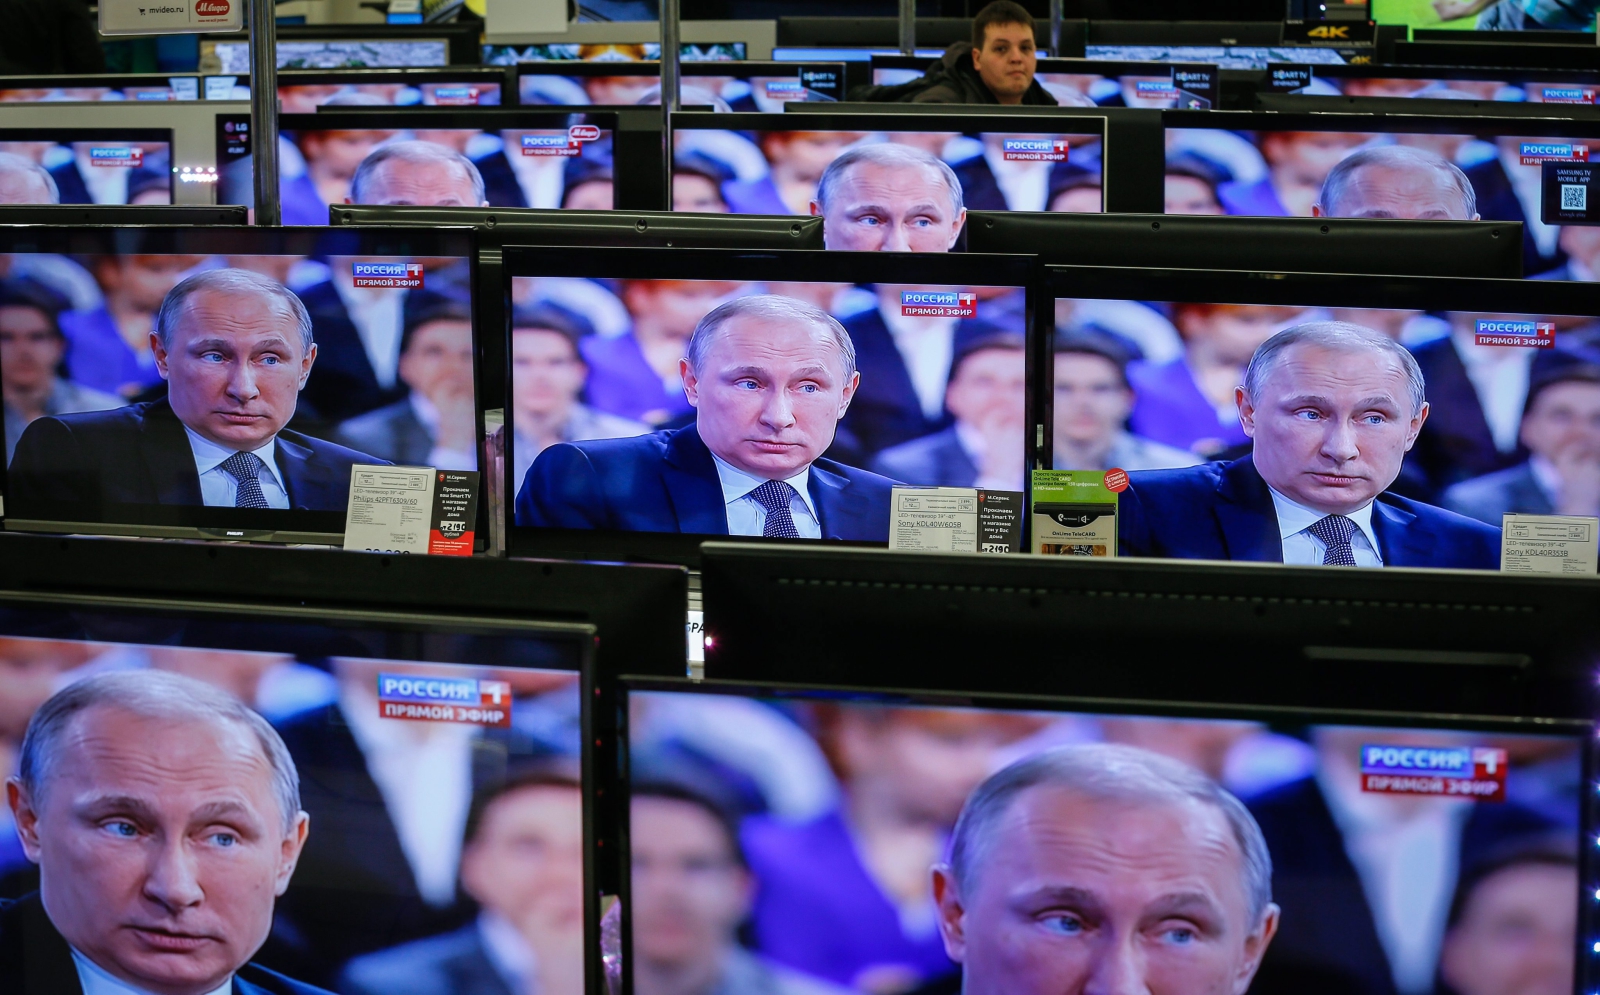 Беларусь не ведет информационной политики в отношениях с Россией